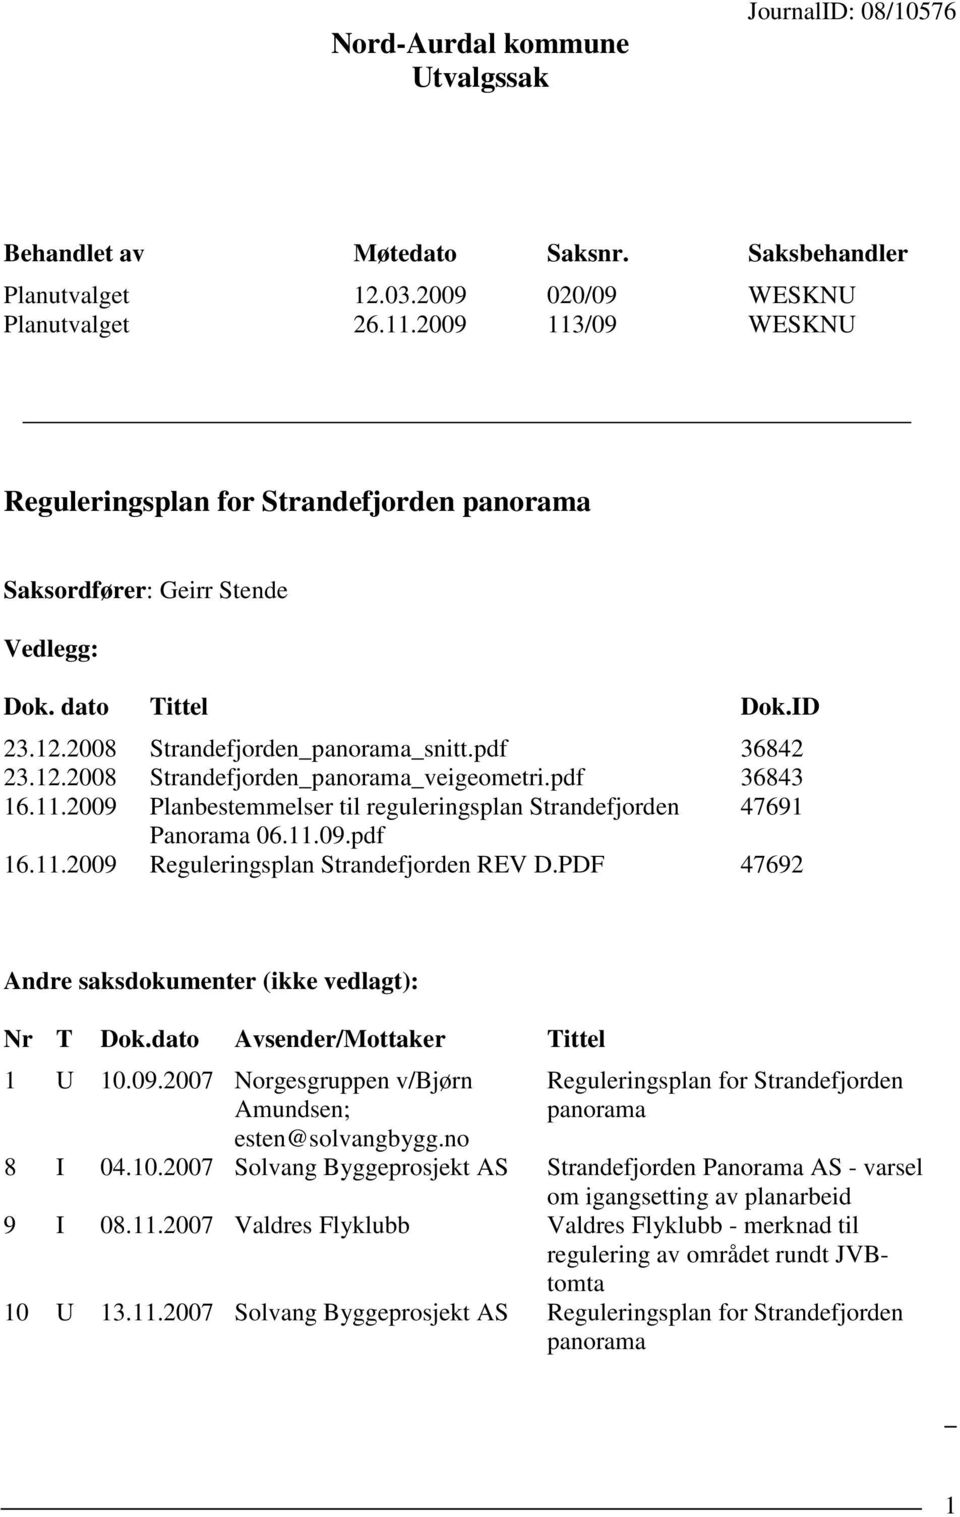 pdf 36843 16.11.2009 Planbestemmelser til reguleringsplan Strandefjorden 47691 Panorama 06.11.09.pdf 16.11.2009 Reguleringsplan Strandefjorden REV D.